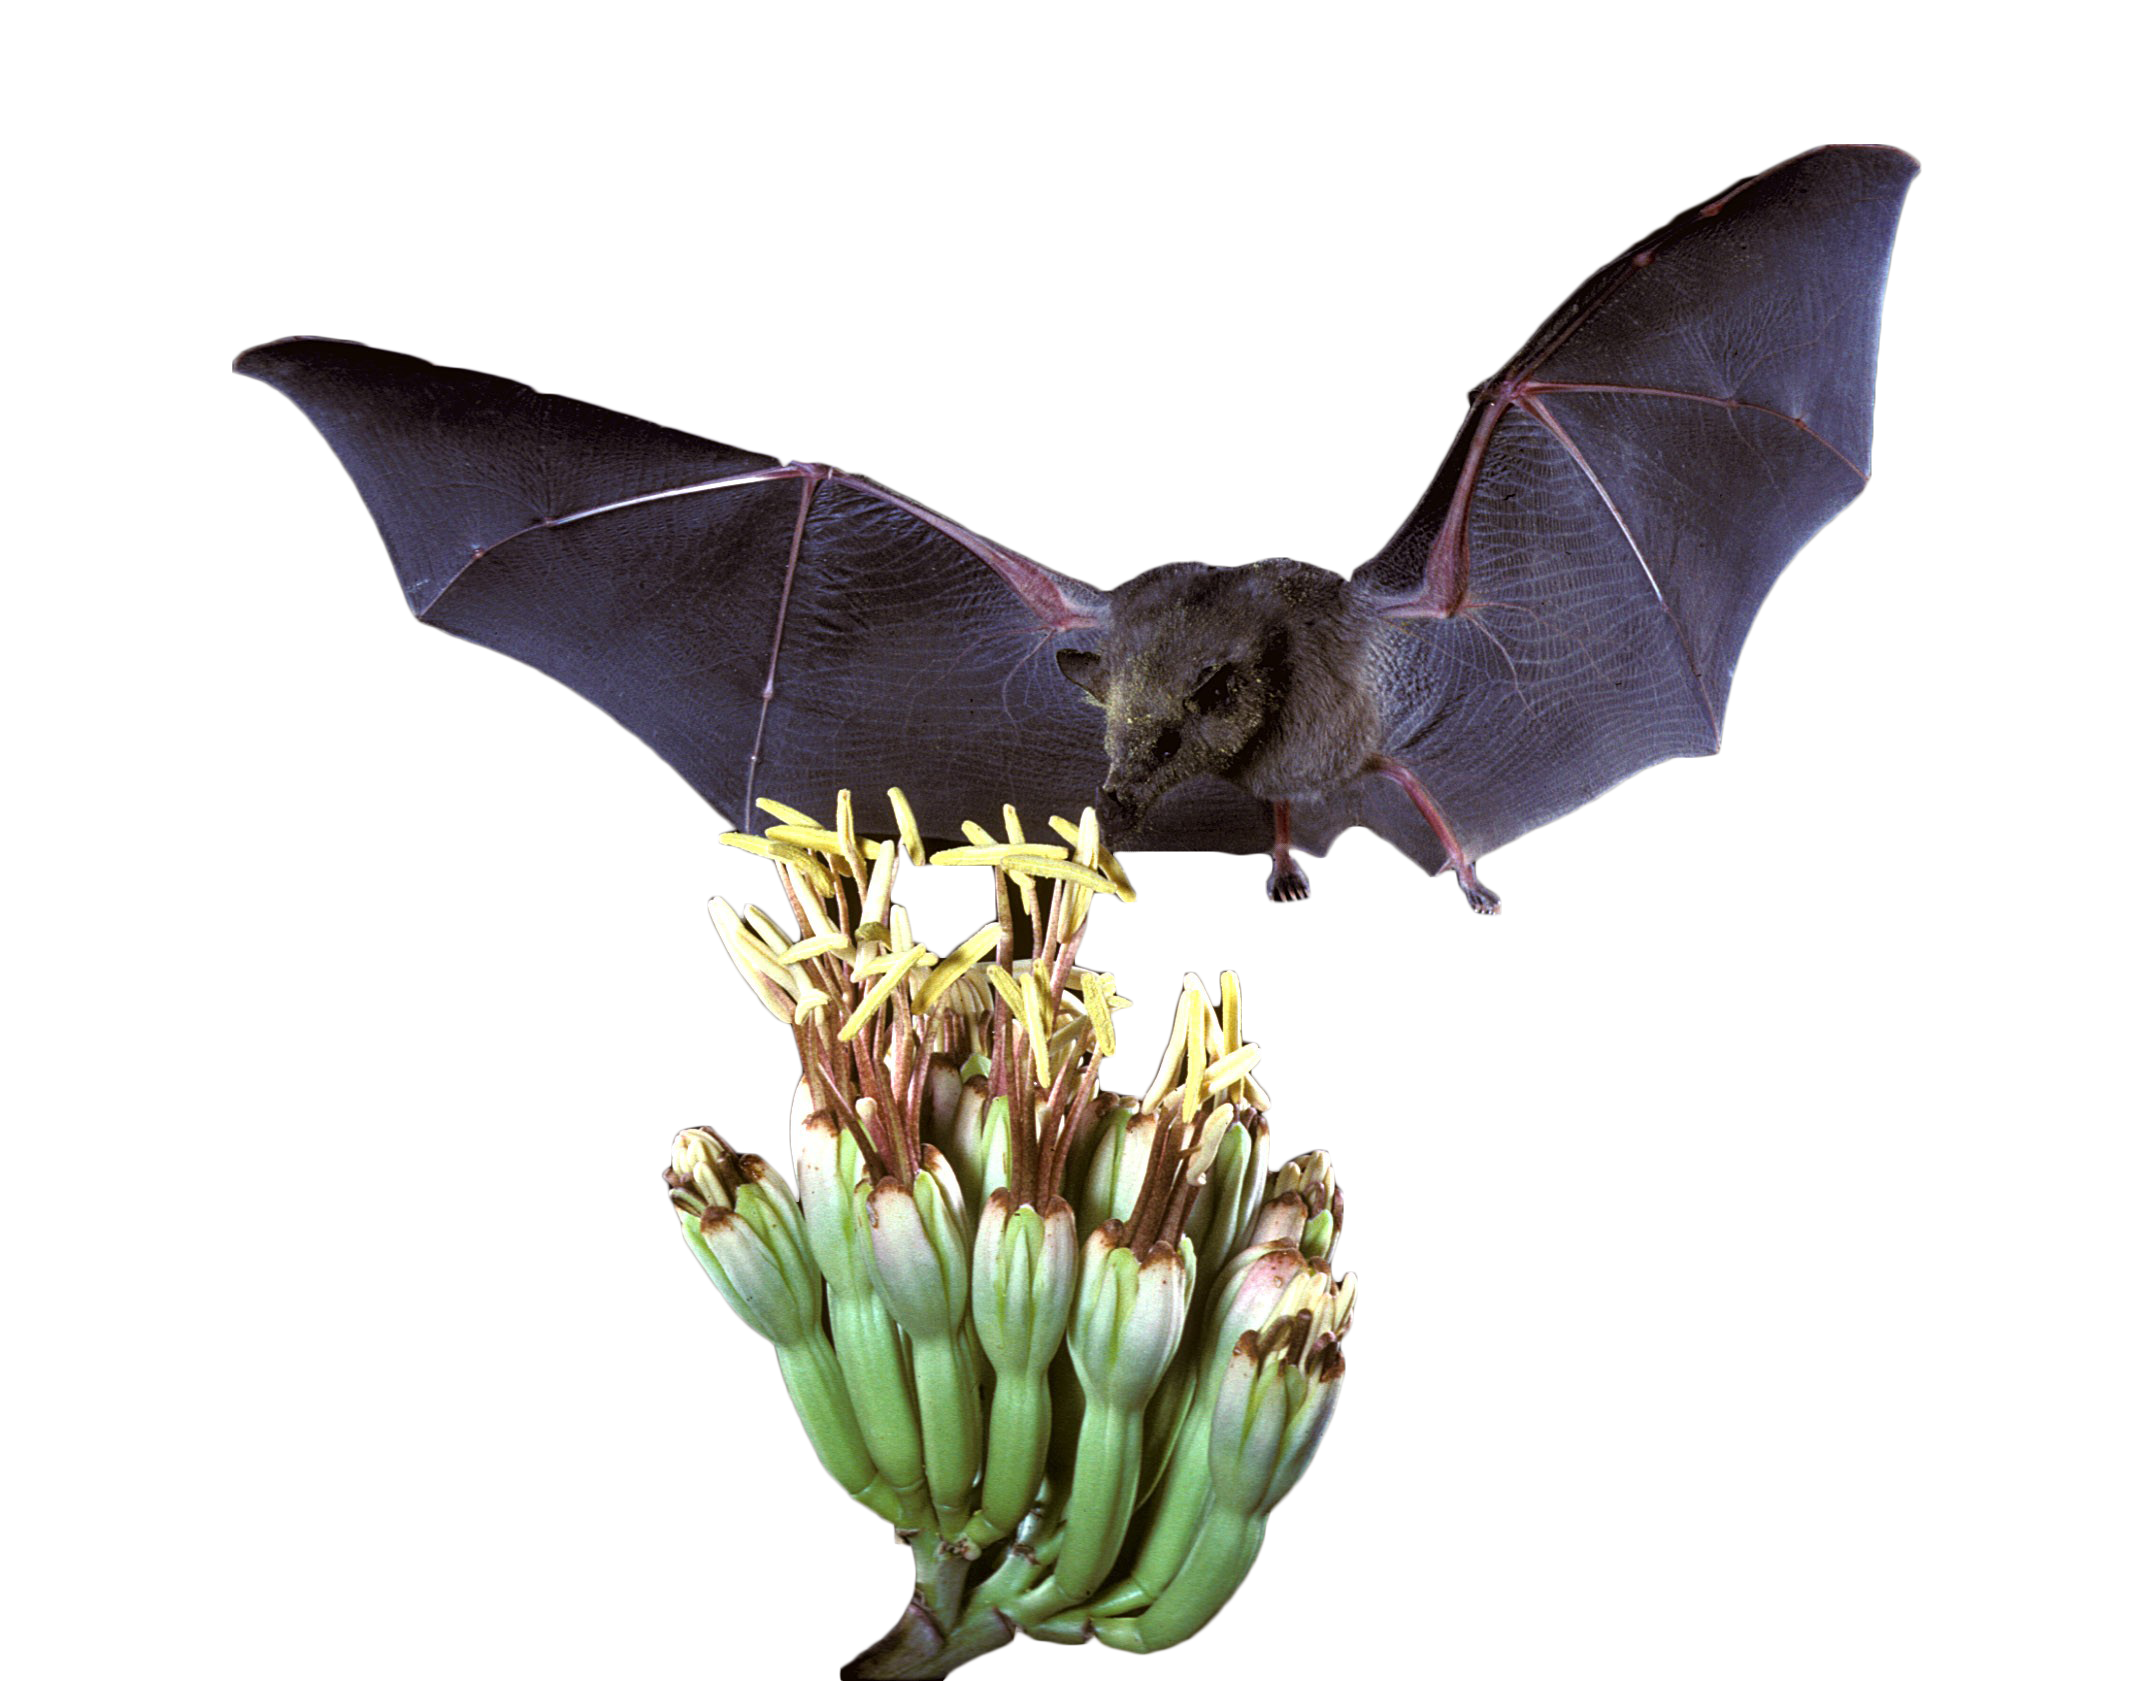 Mexican Long Tongued Bat